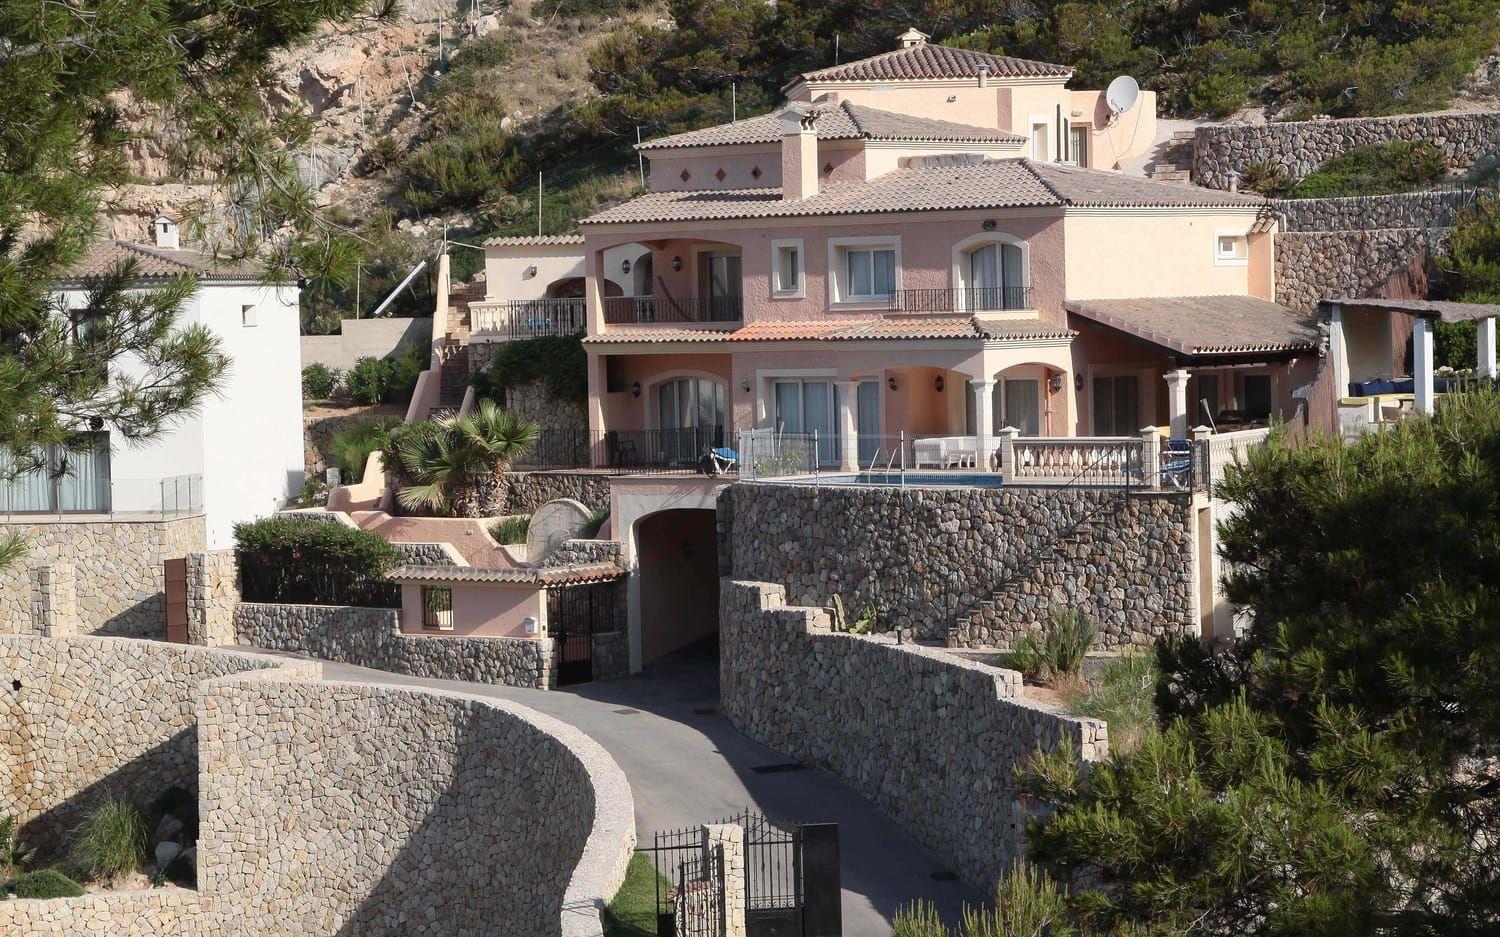 Enligt obekräftade uppgifter äger paret Jolie Pitt även en fastighet på södra Mallorca. Det var i juni i år som lokal press avslöjade att Brad Pitt hade förälskat sig i en lyxvilla i staden Andratx och slagit till före en köpeskilling kring 2,65 miljoner pund. Utöver 900 kvadratmeter boyta sägs villan erbjuda en hänförande utsikt. Foto: Stella Pictures